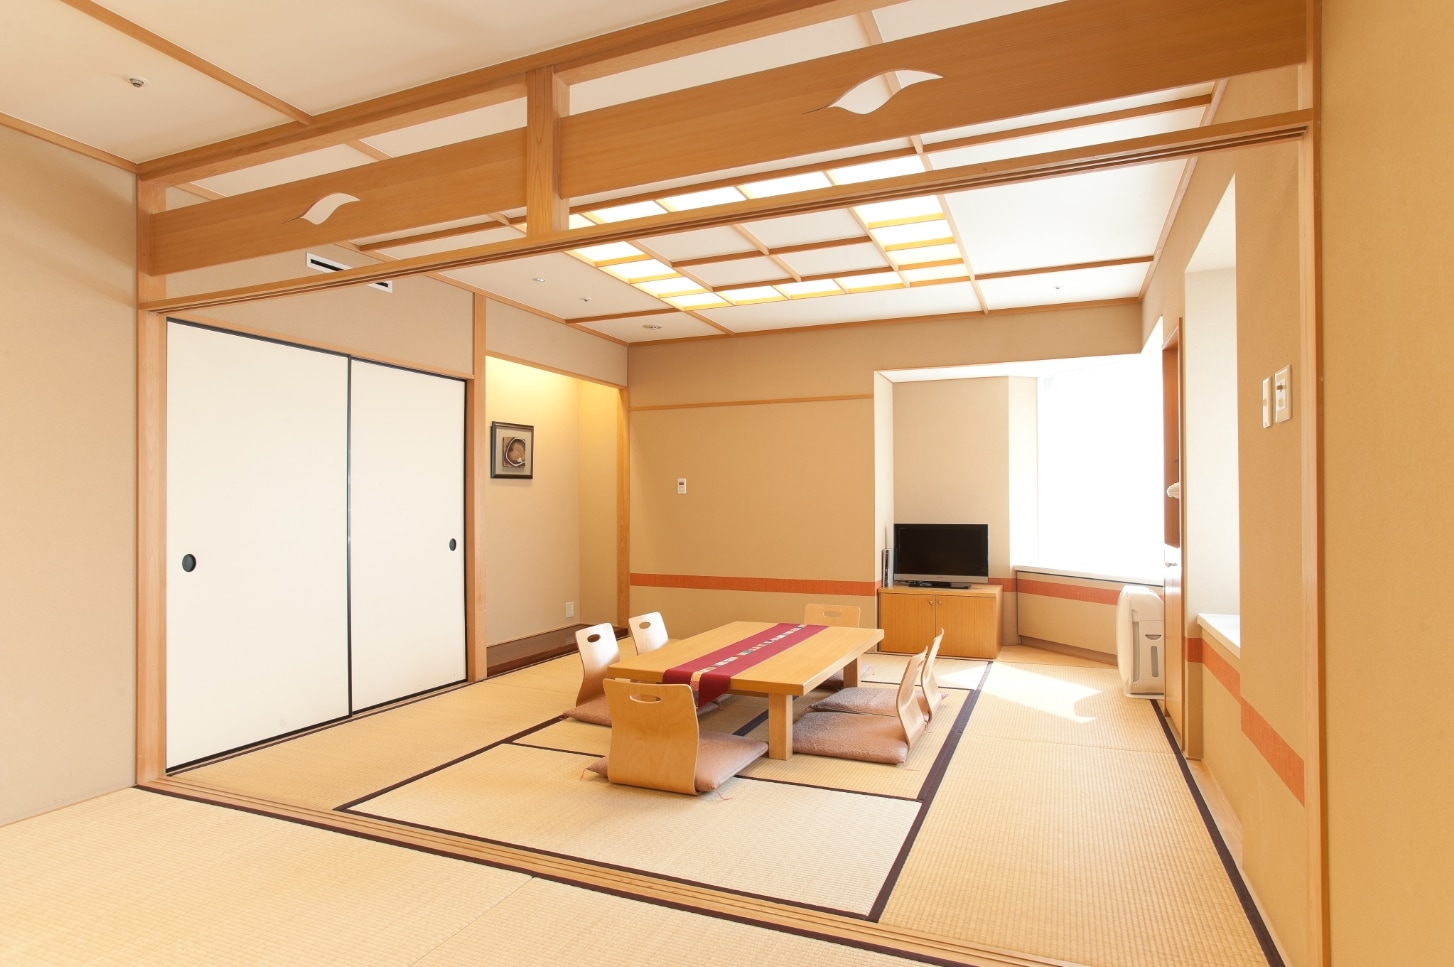 Kamar bergaya Jepang.jpg